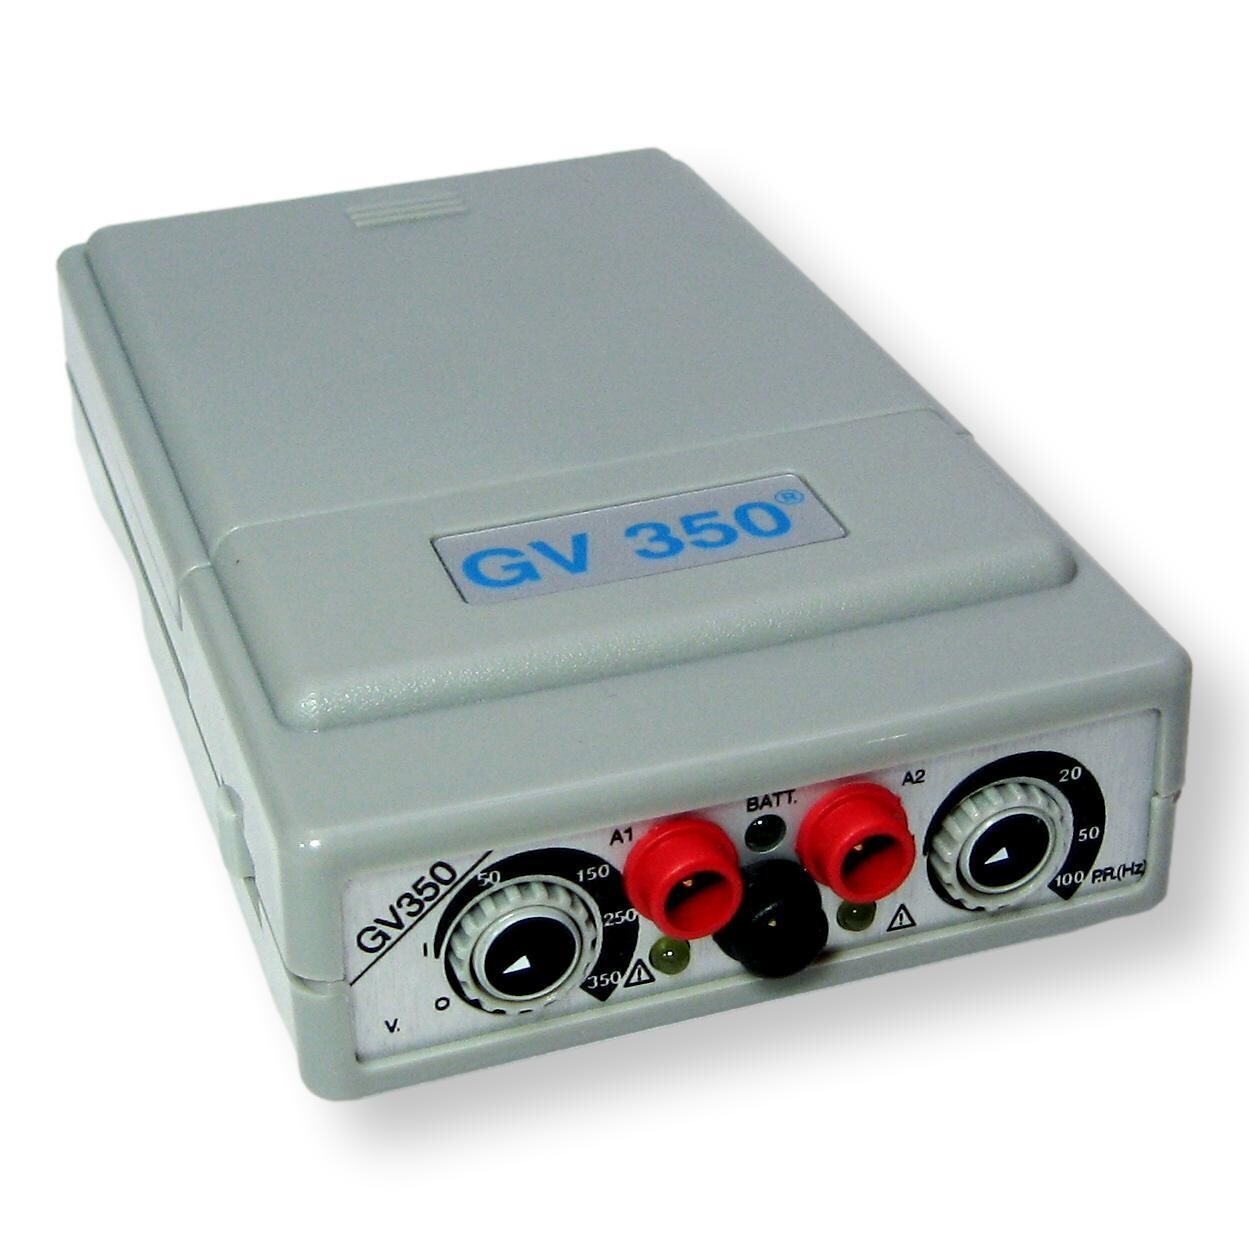 Estimulador de alto voltaje GV350